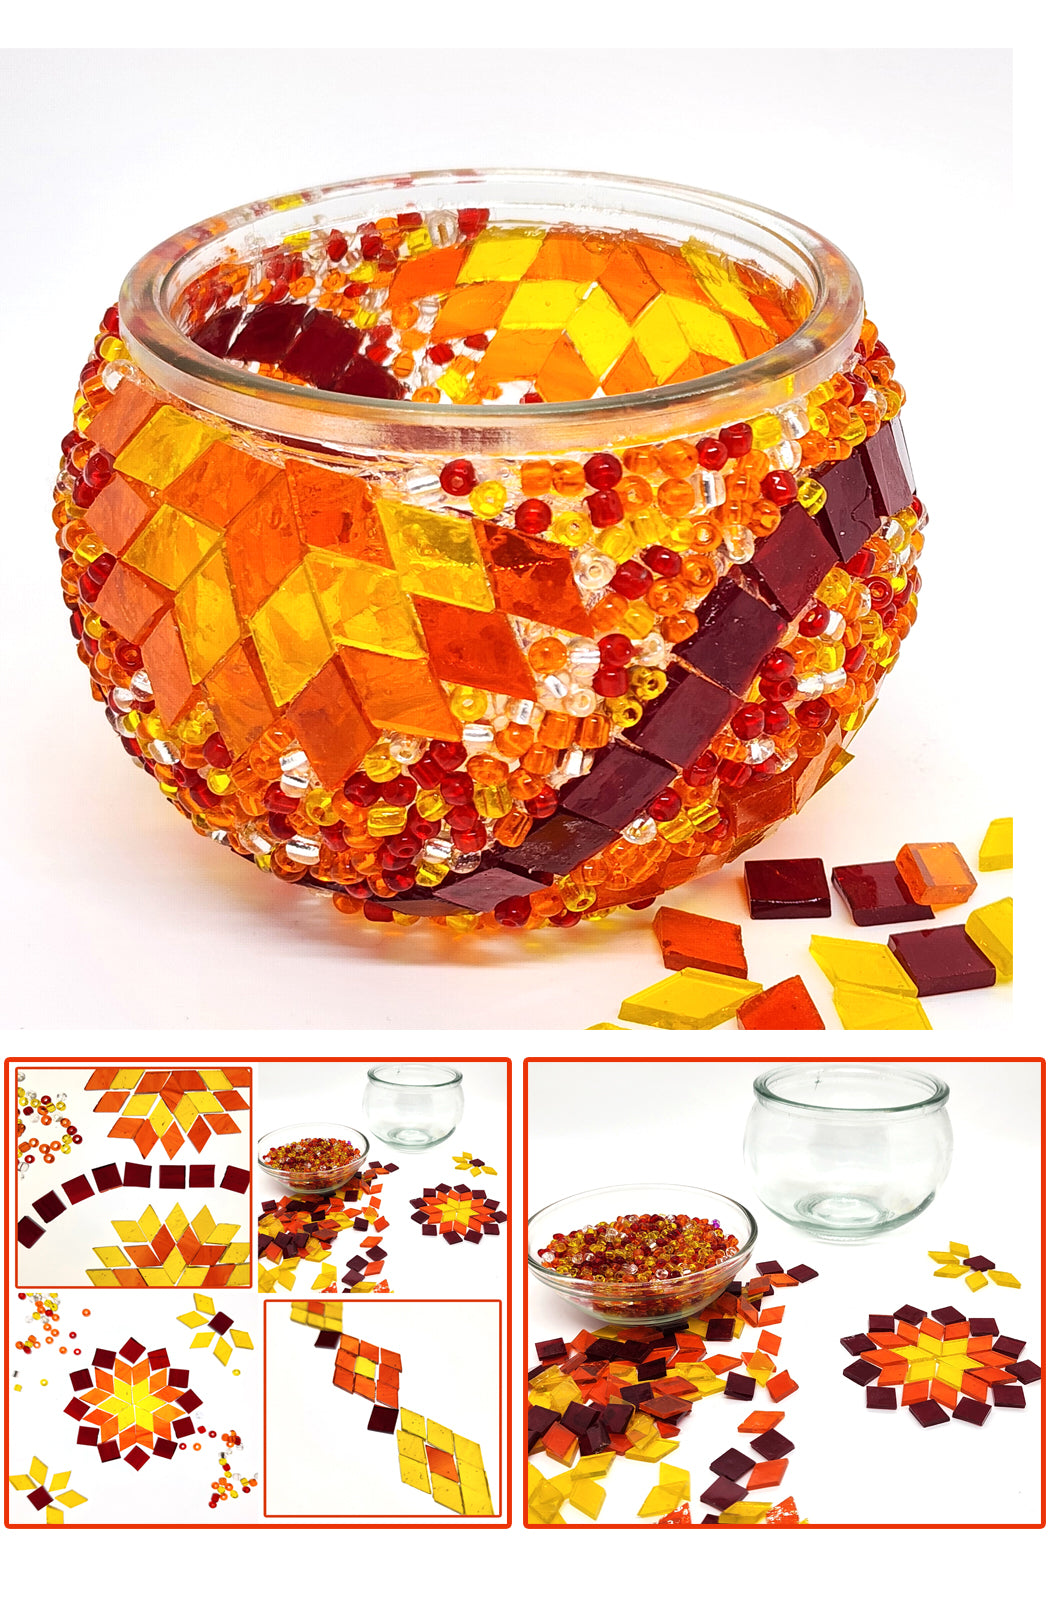 DIY Mosaic Tealight Craft Kit -Portakal (Orange & Red)